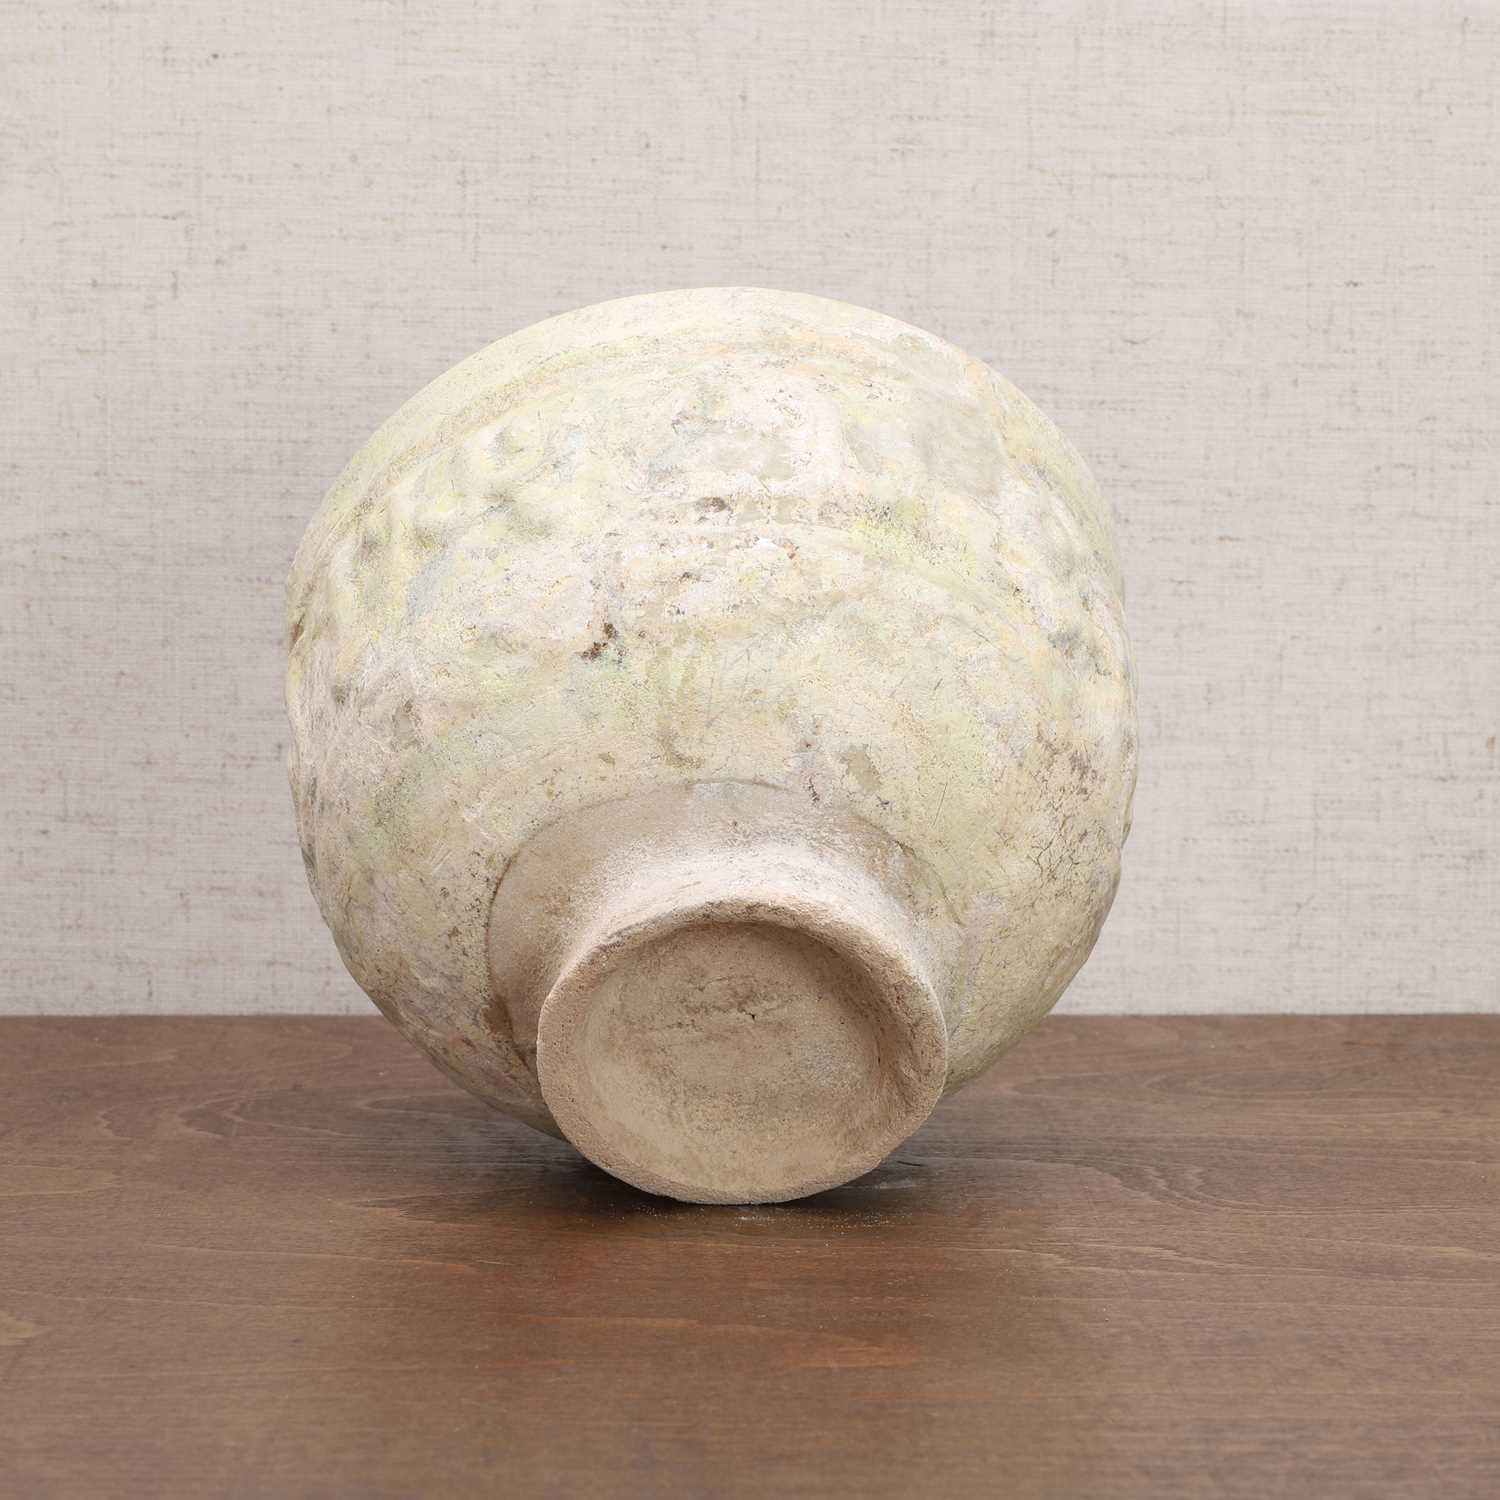 A Nishapur white-glazed bowl, - Image 7 of 7